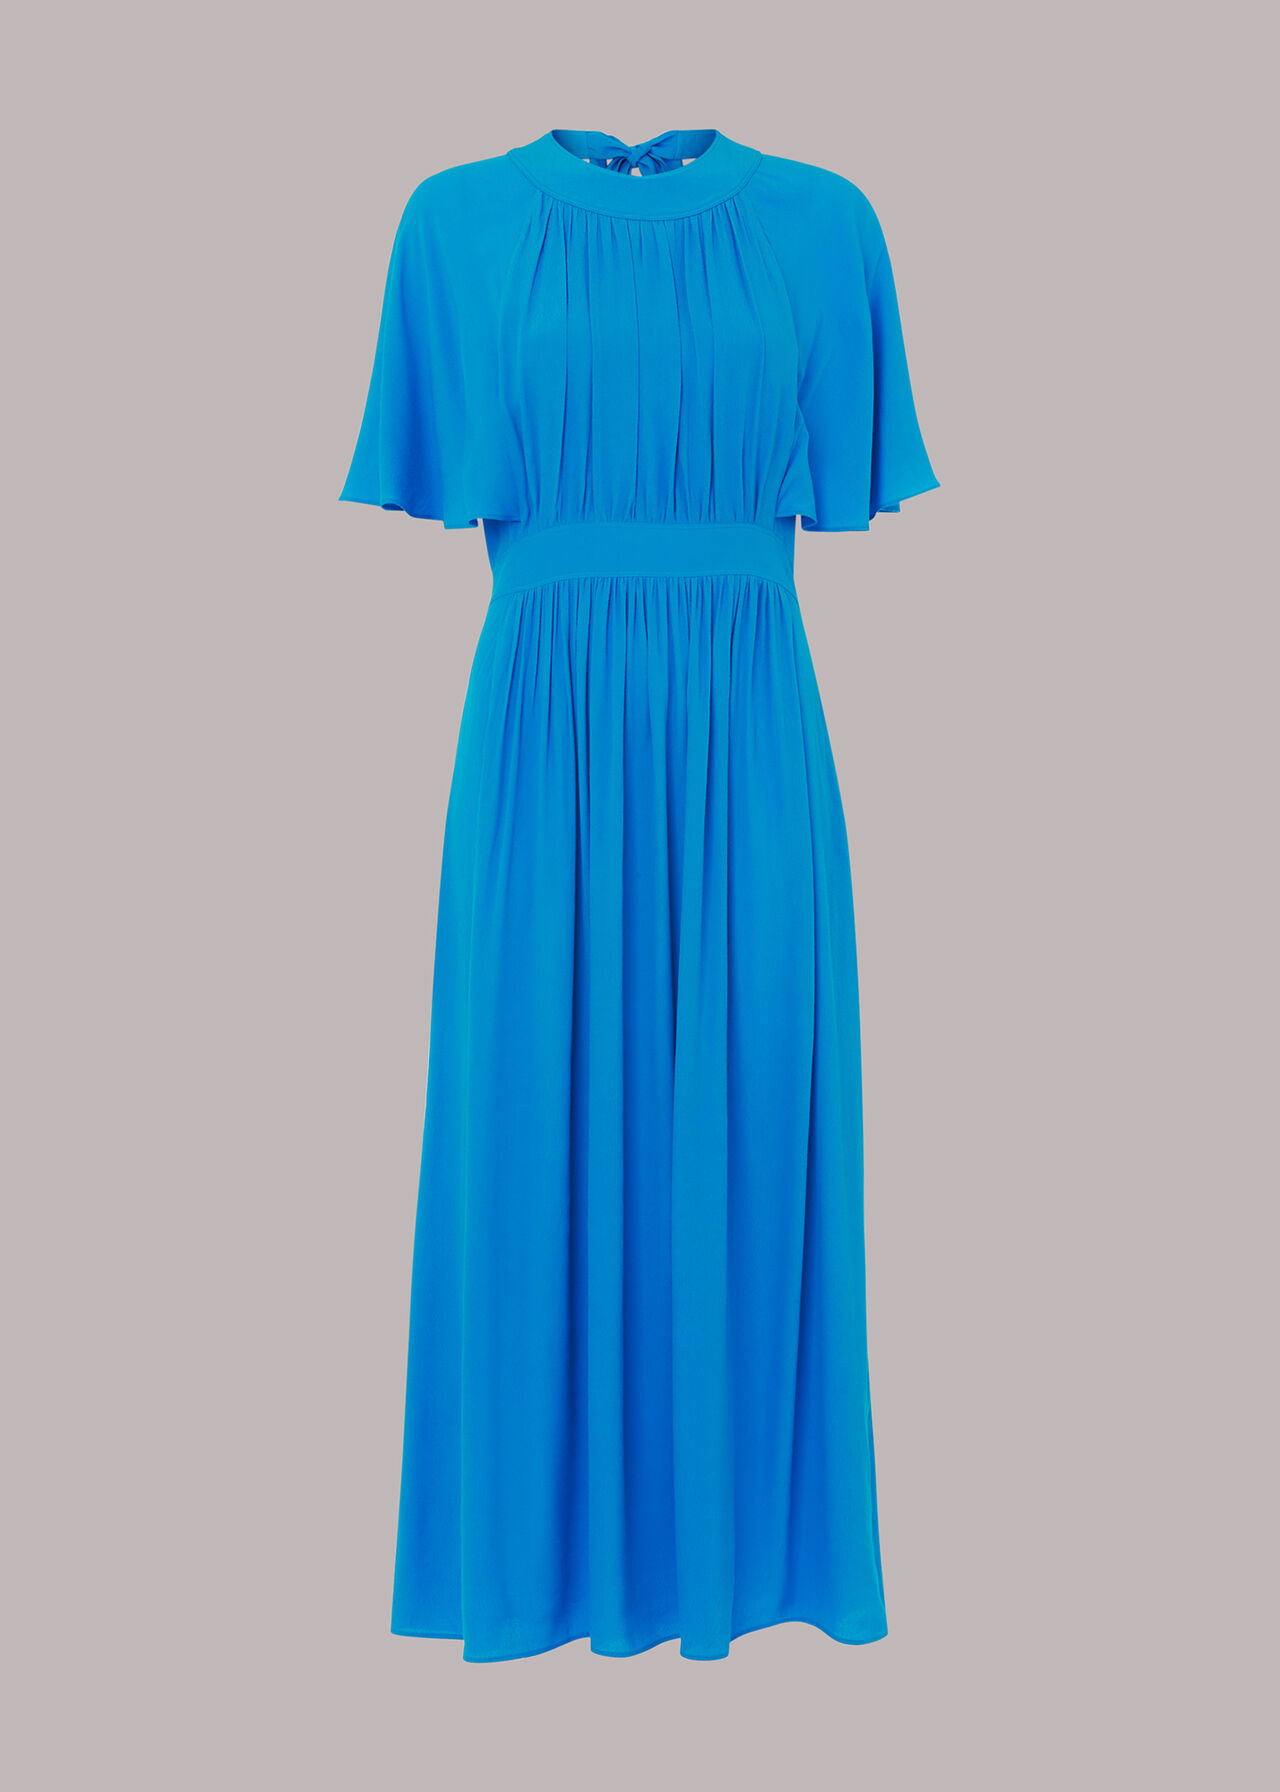 Amelia Cape Sleeve Dress